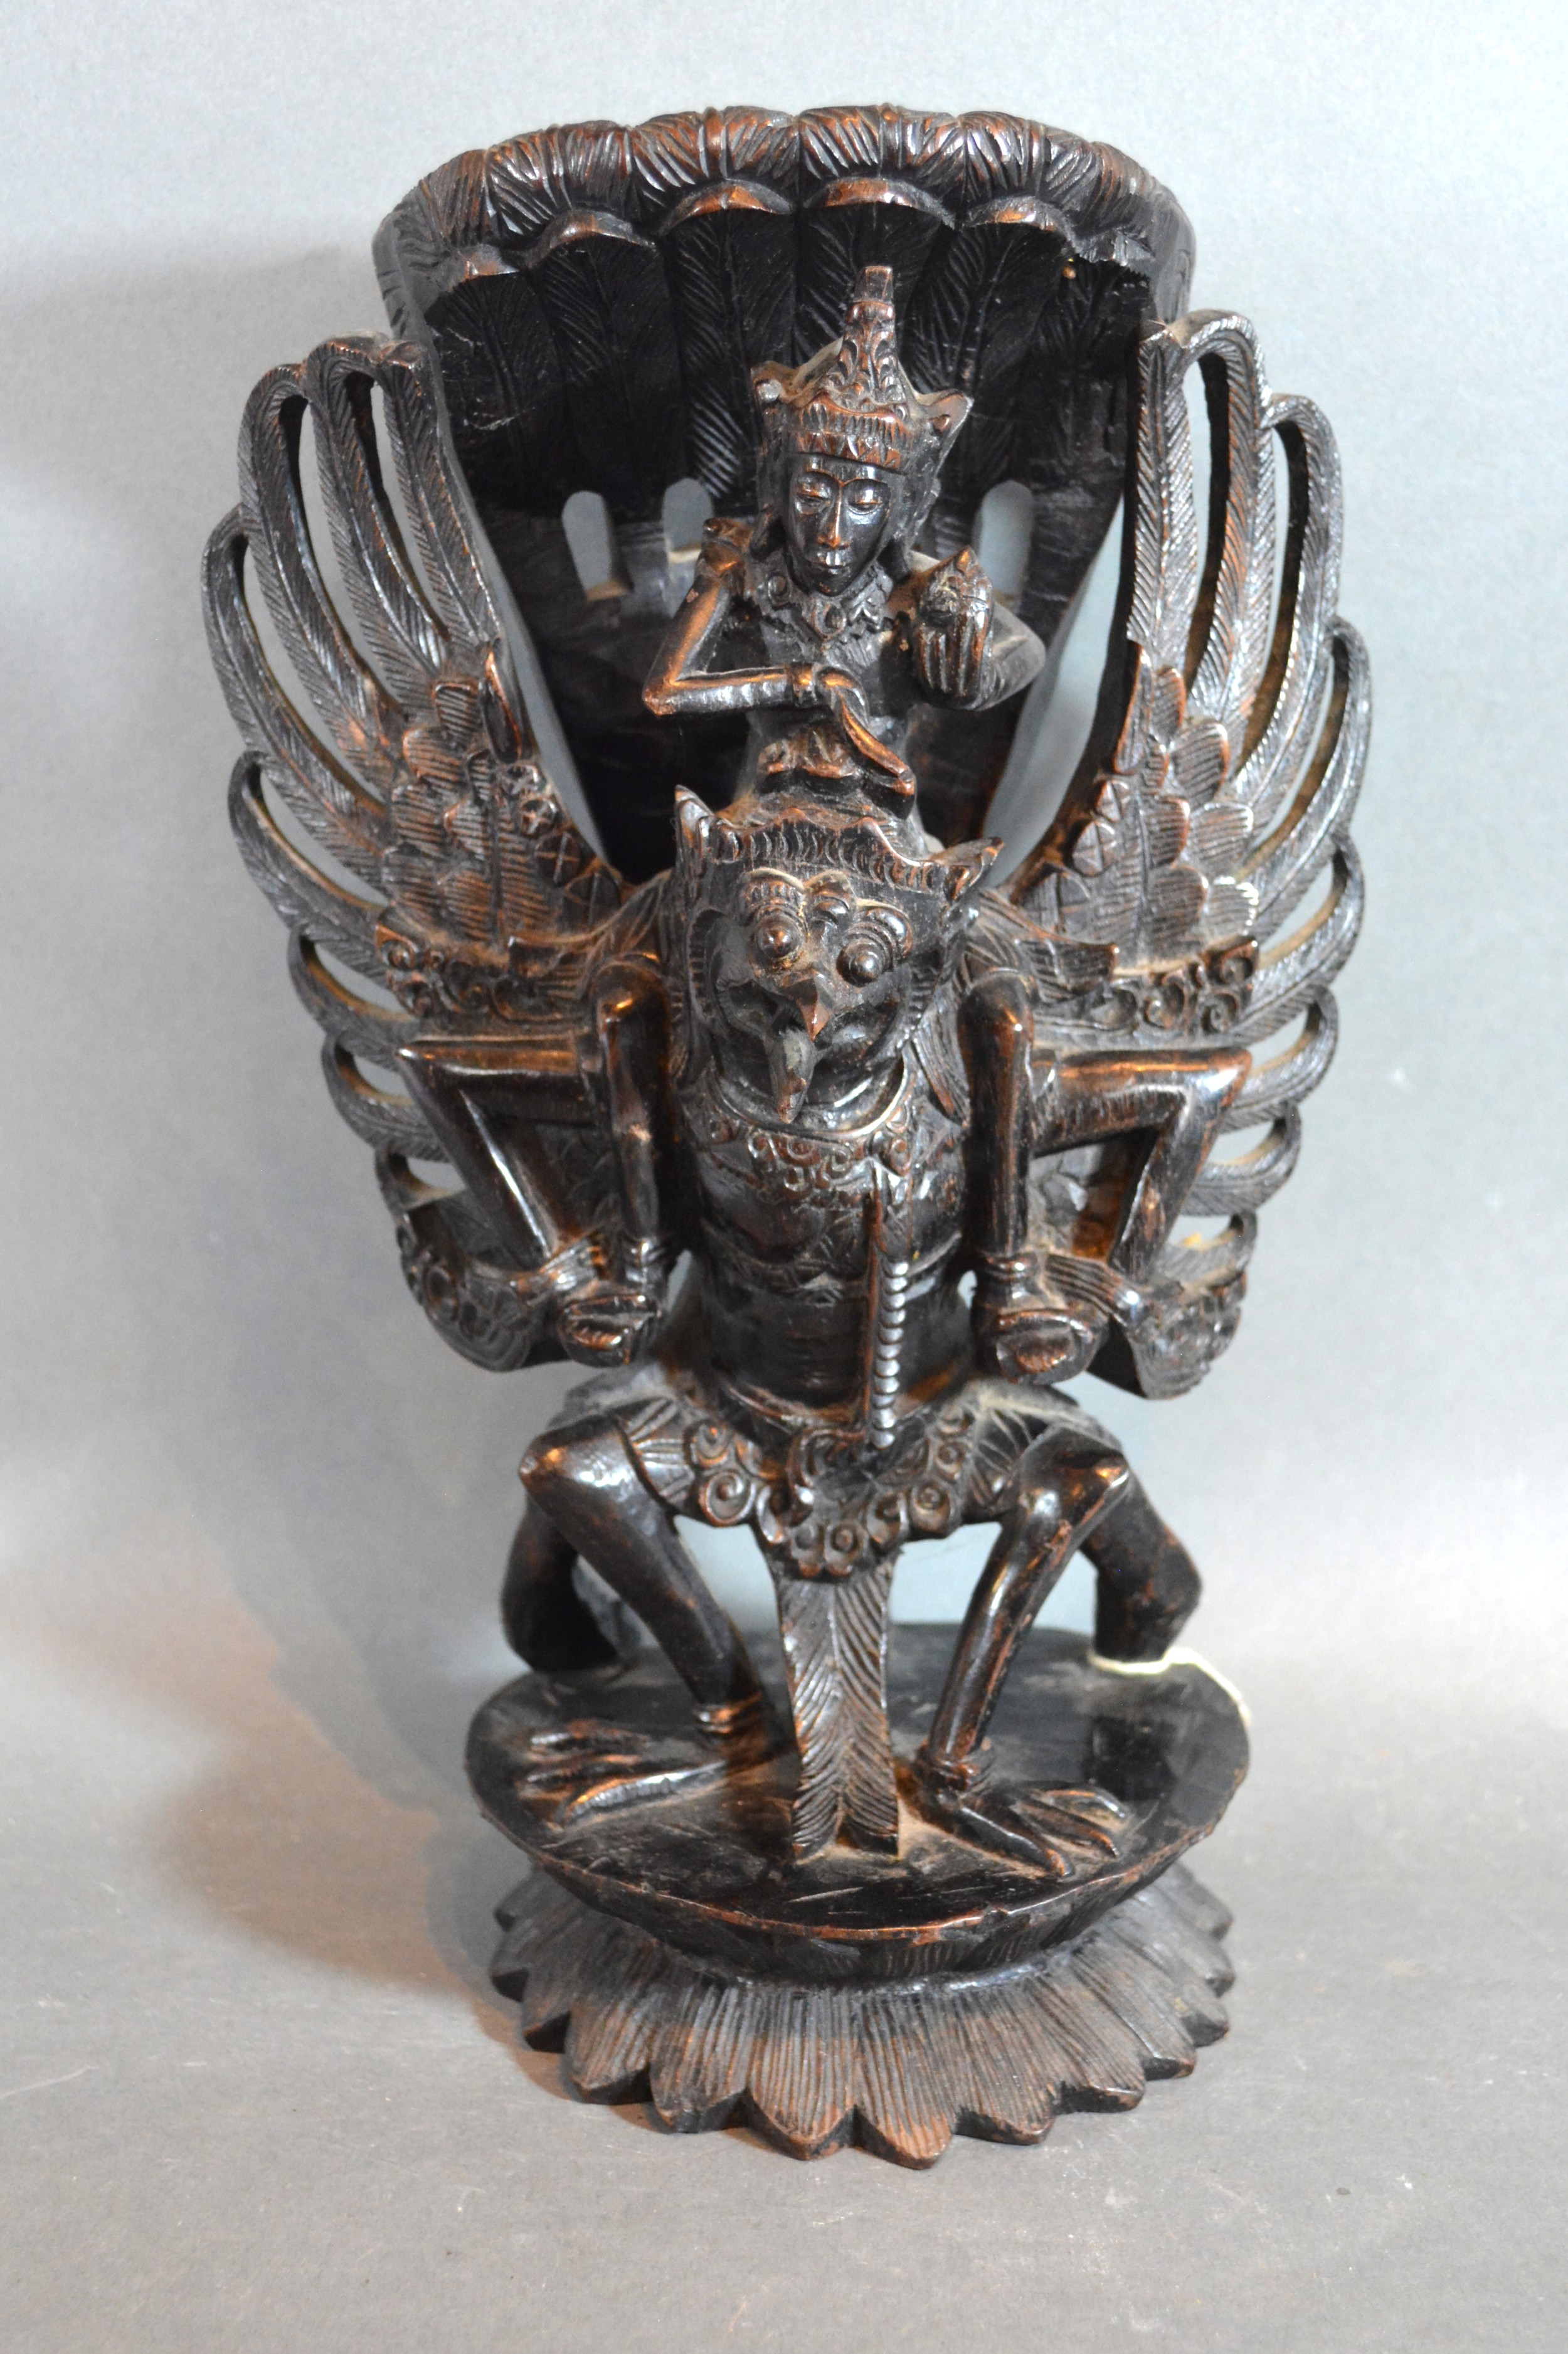 A Balinese Wooden Carving of Vishnu and Garuda 30cms tall